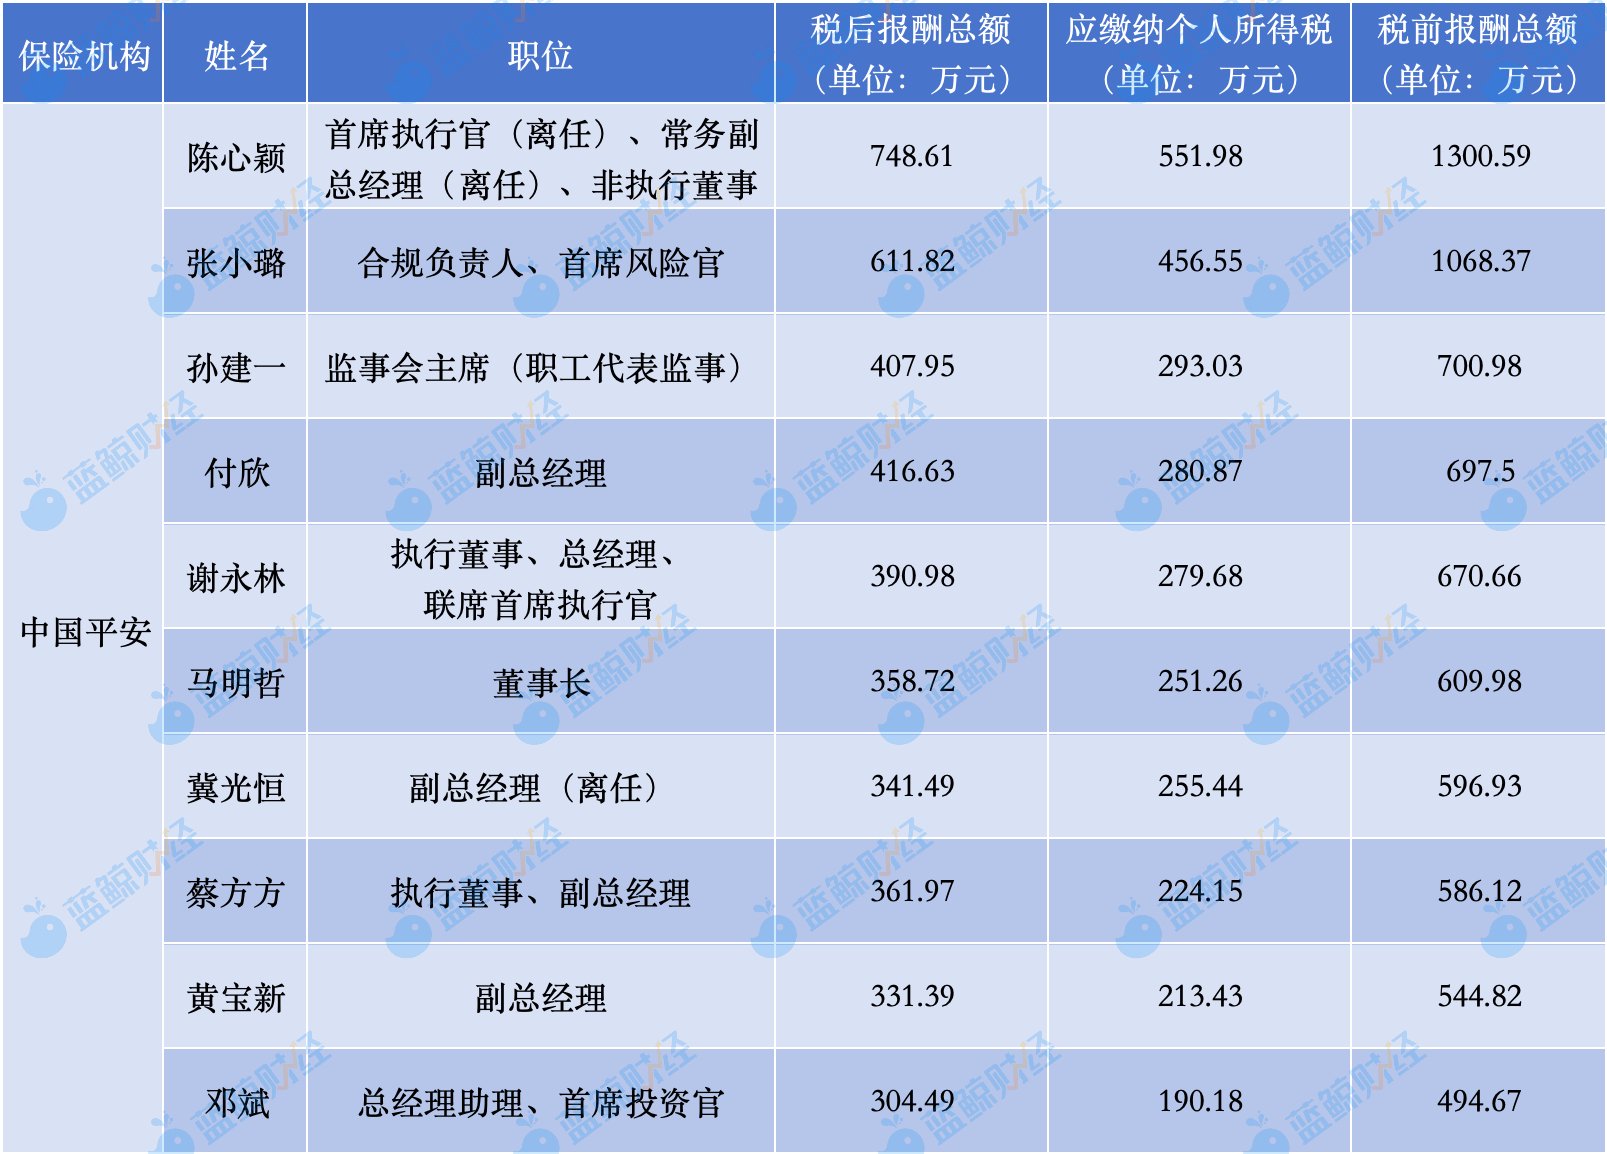 数据来源：中国平安年报；制图：蓝鲸财经